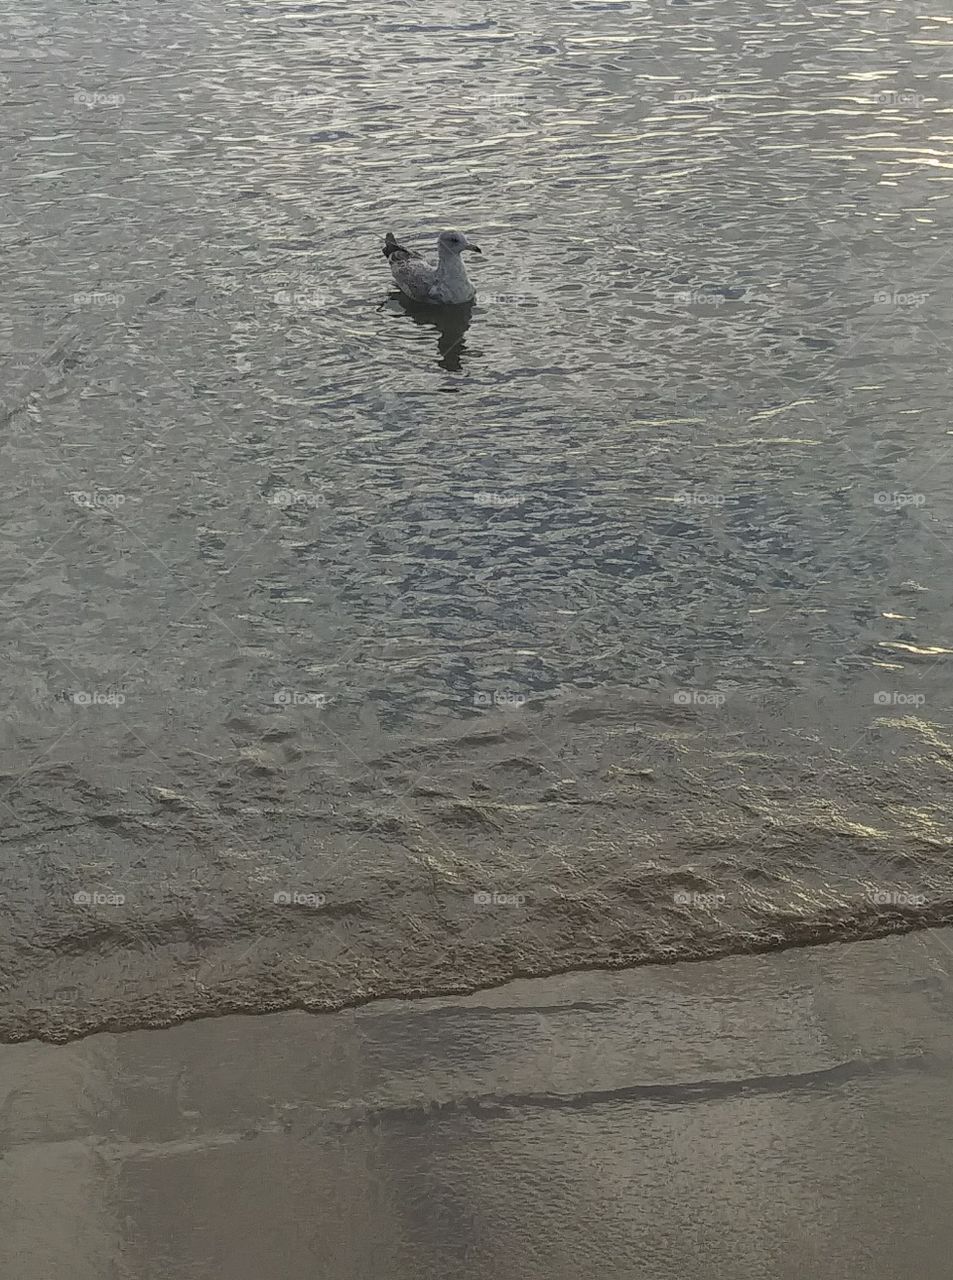 Seagull enjoying a summer float